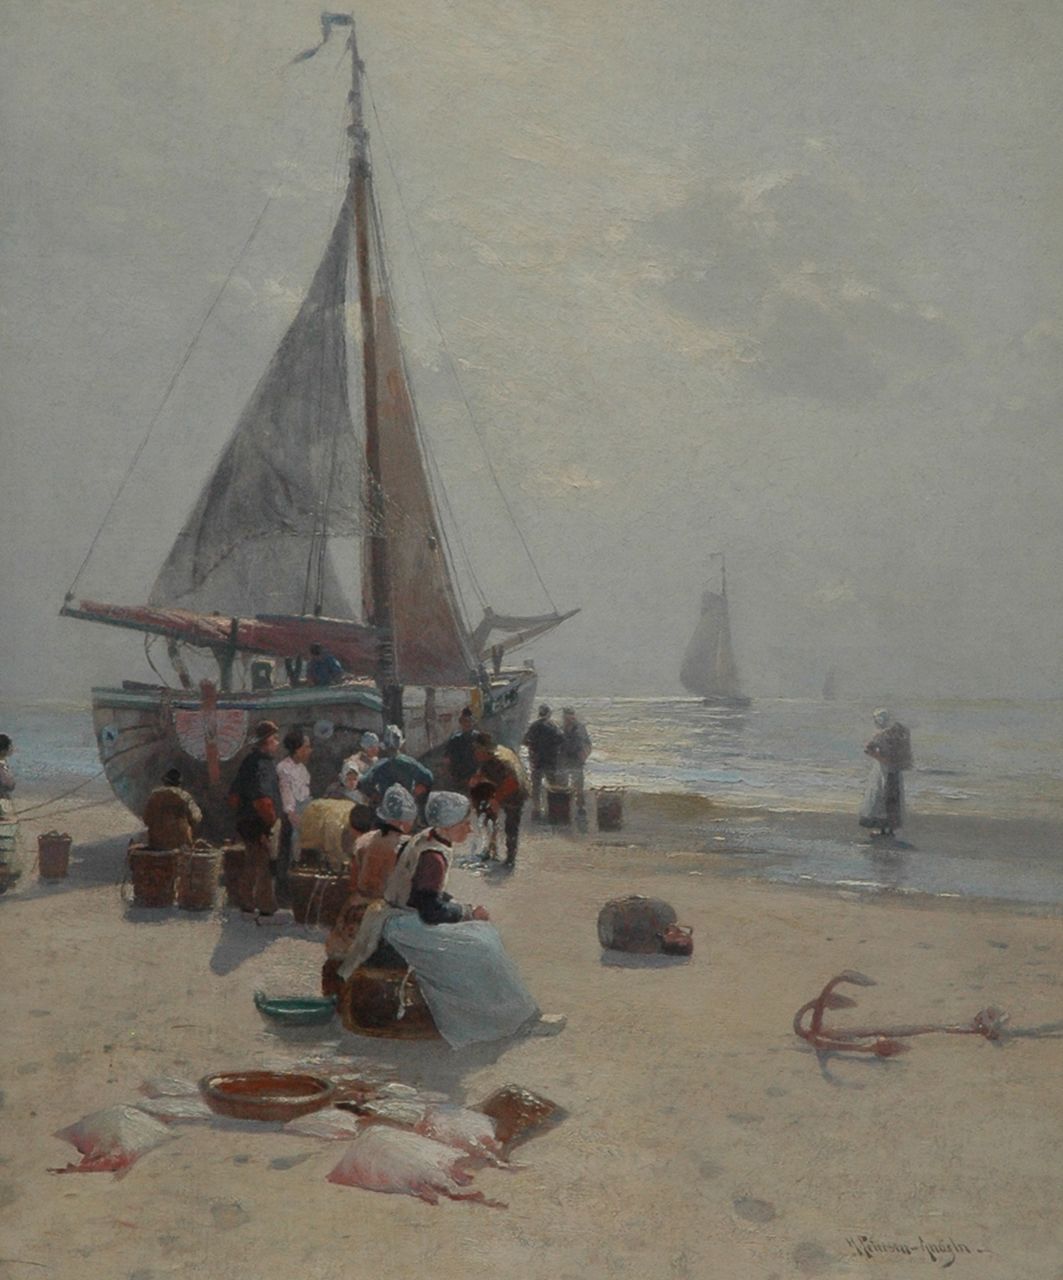 Petersen-Angeln H.  | Heinrich Wilhelm Petersen-Angeln, The fish auction, Egmond, Öl auf Leinwand 112,0 x 90,4 cm, signed l.r. und painted between 1893-1895